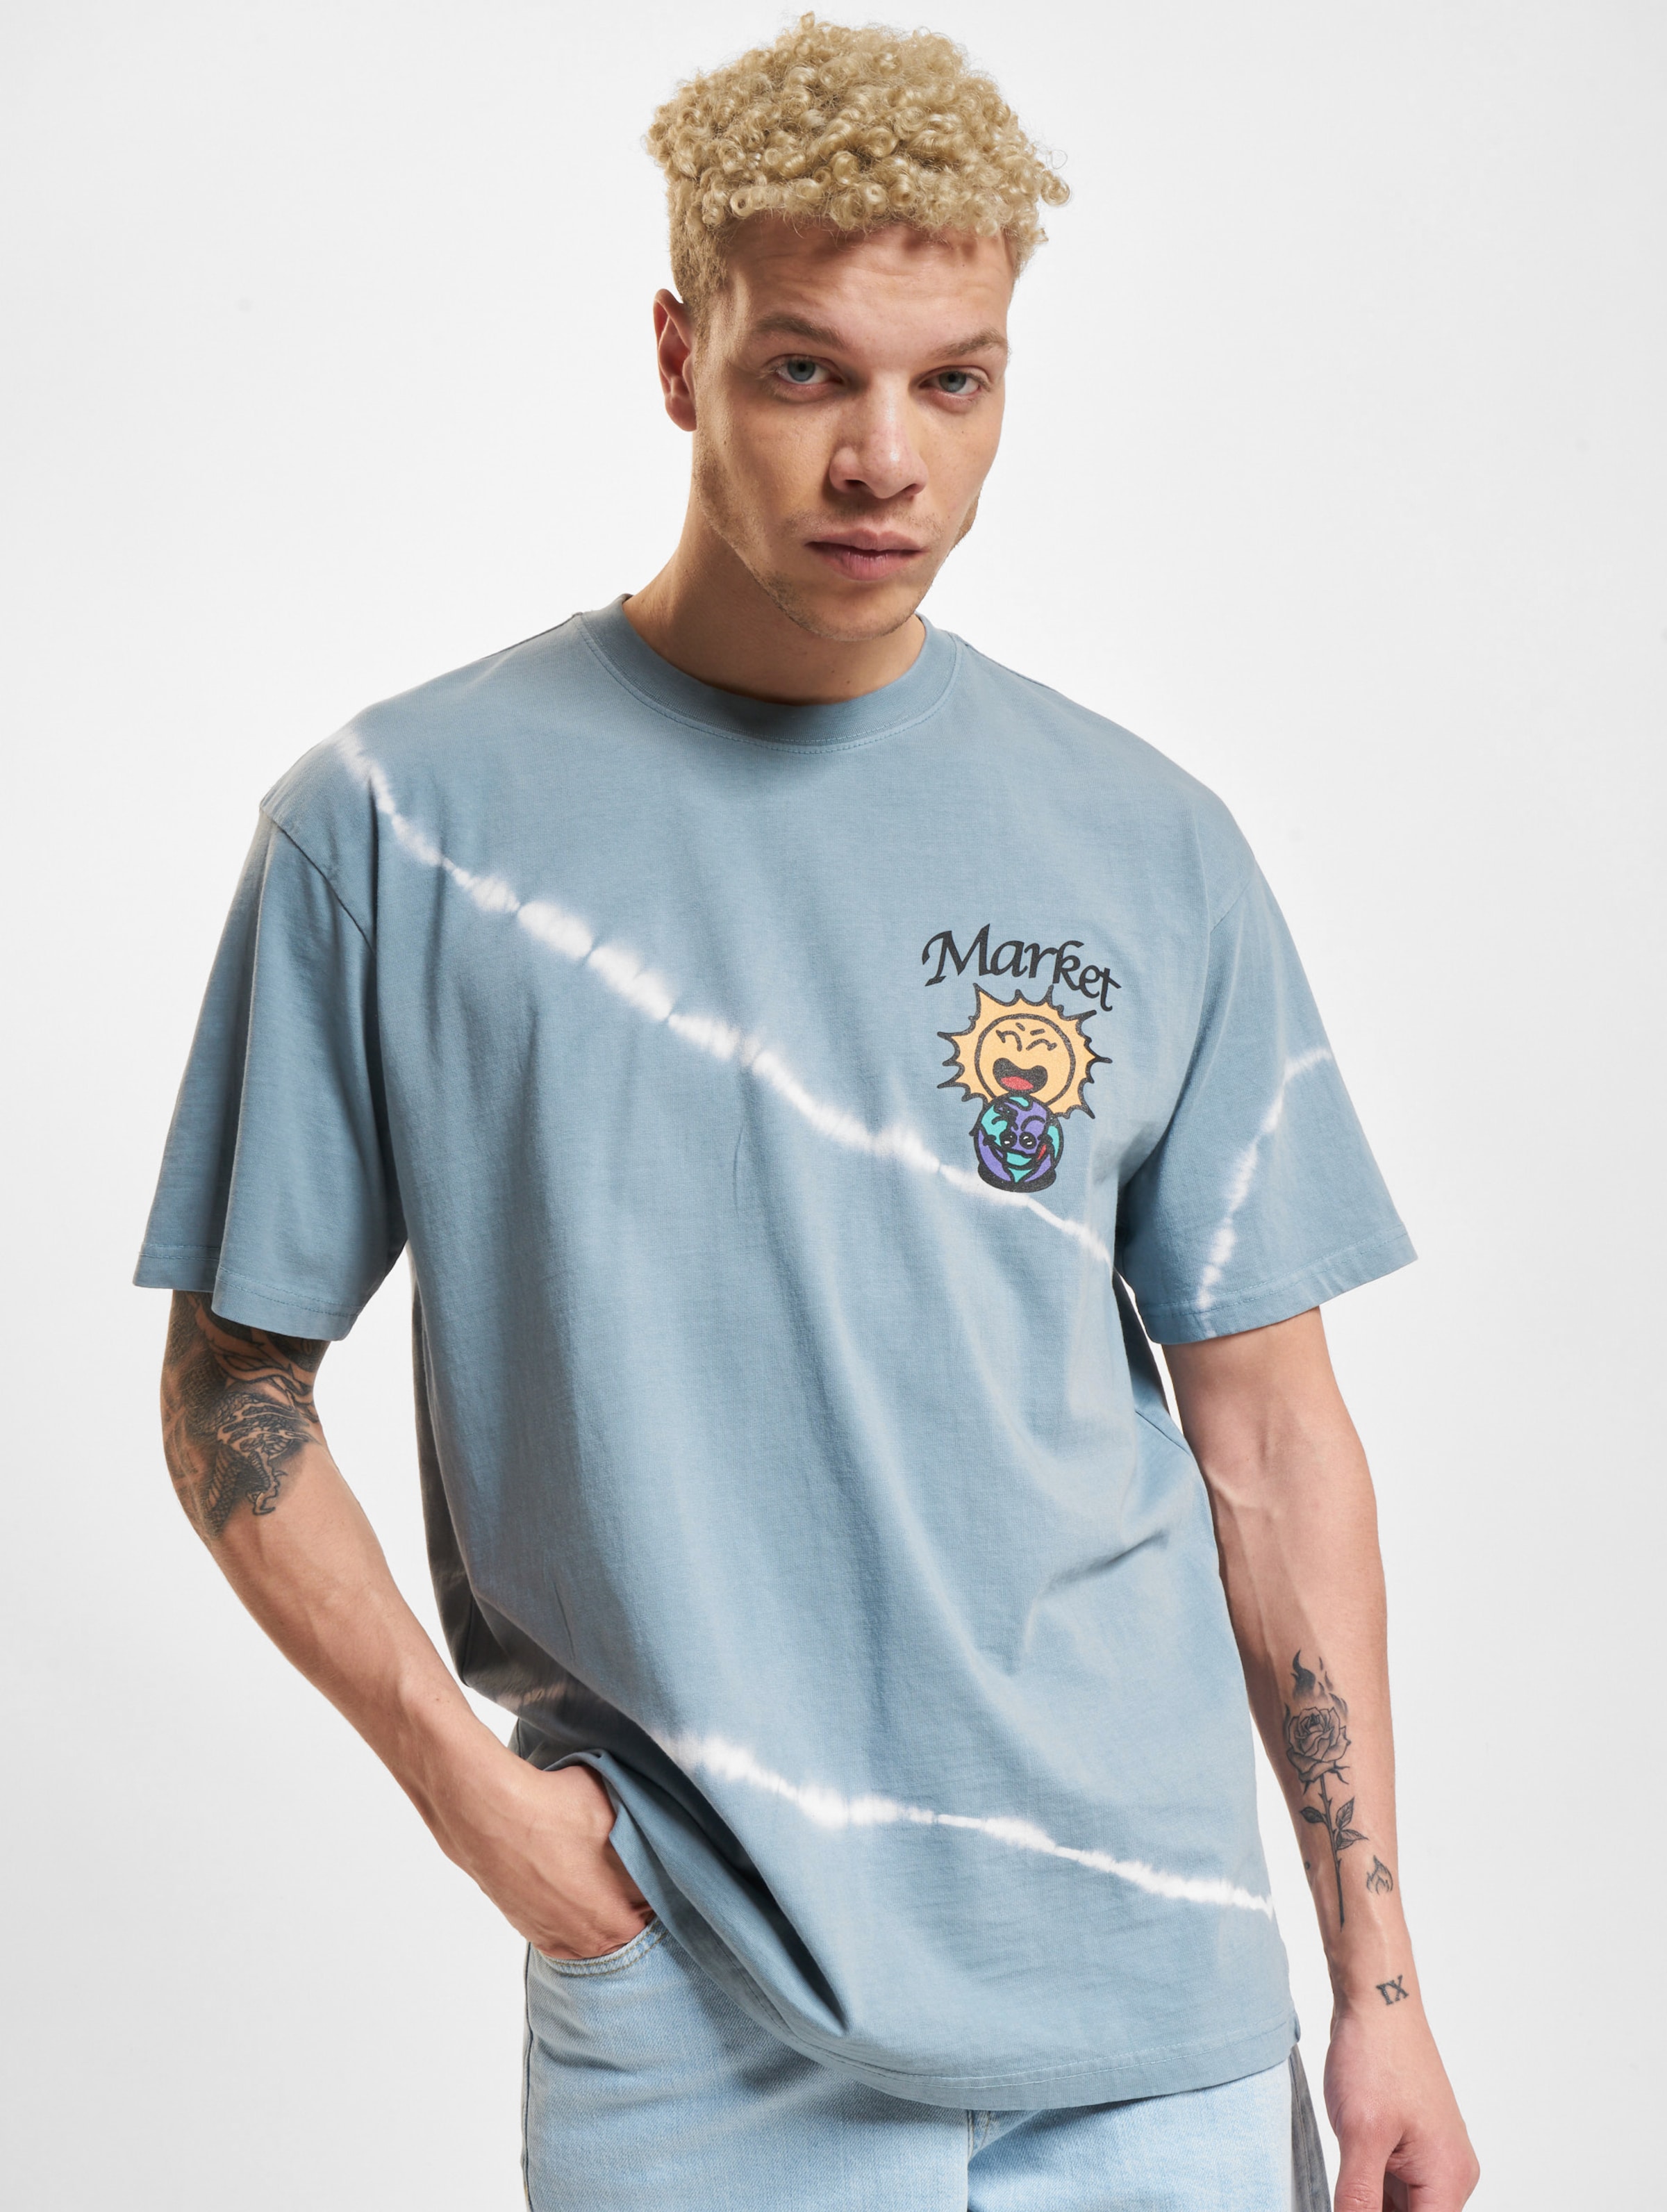 Market Leave No Trace T-Shirts Männer,Unisex op kleur blauw, Maat L